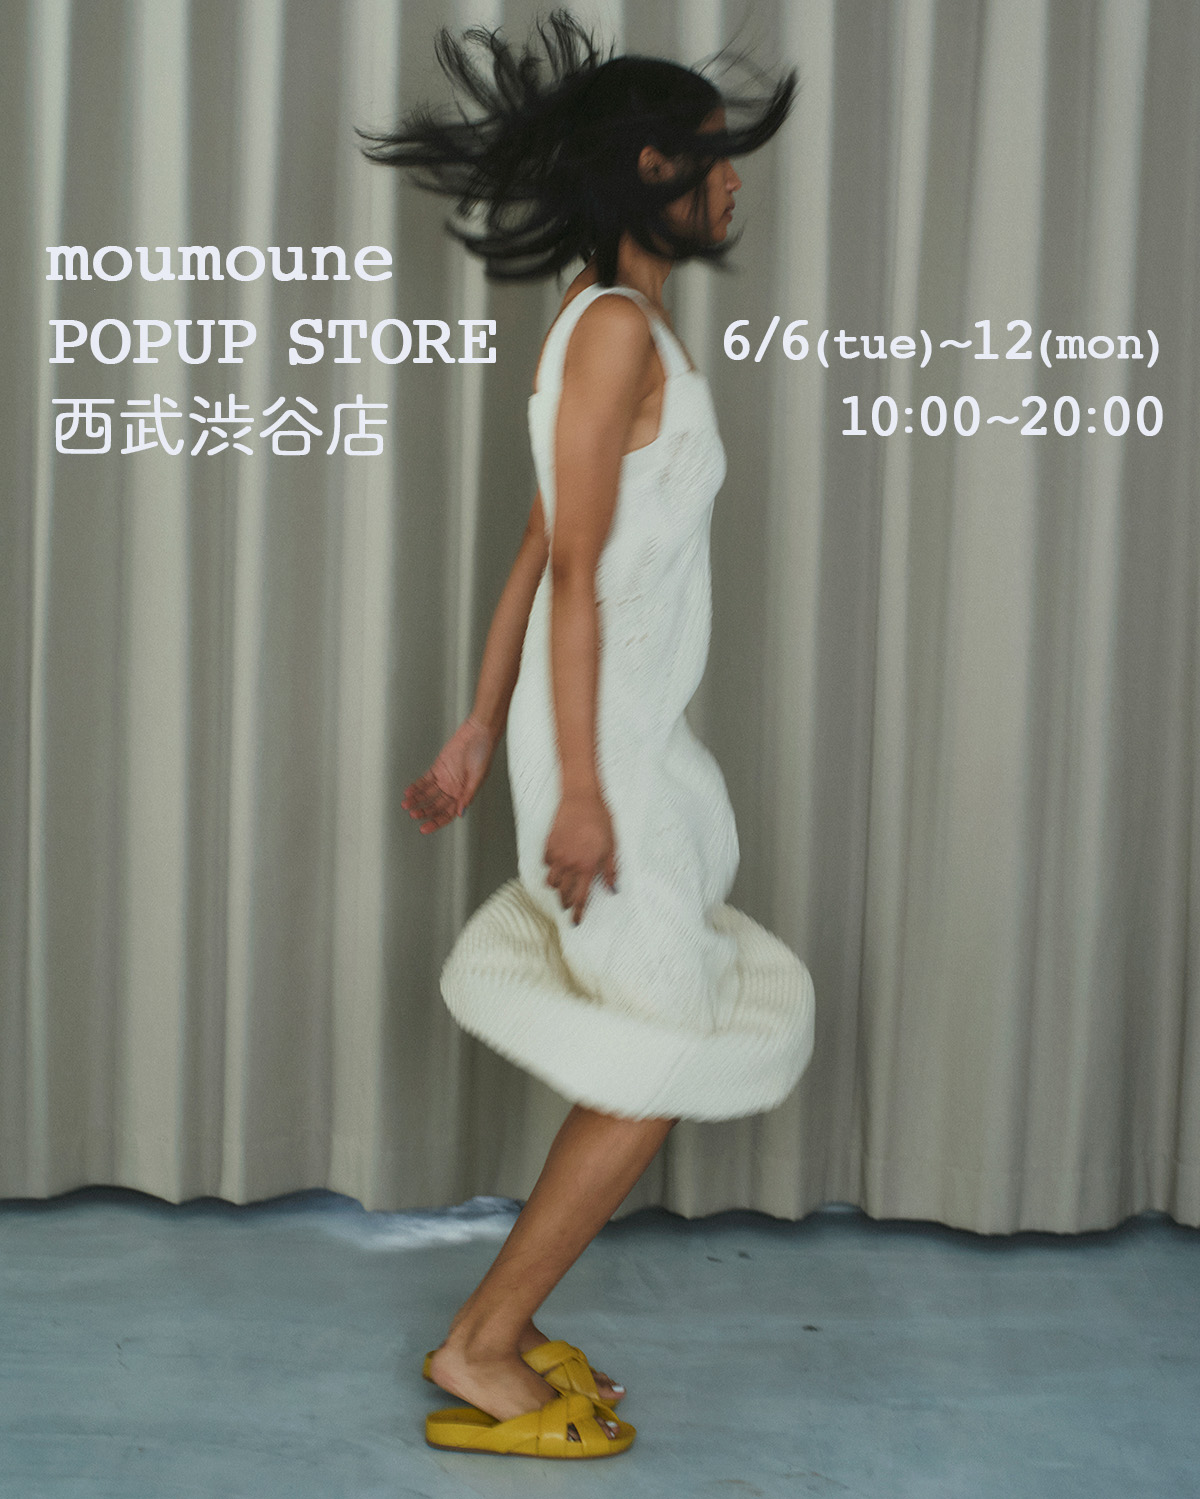 moumoune POPUP STORE in 西武渋谷店　6/6~12